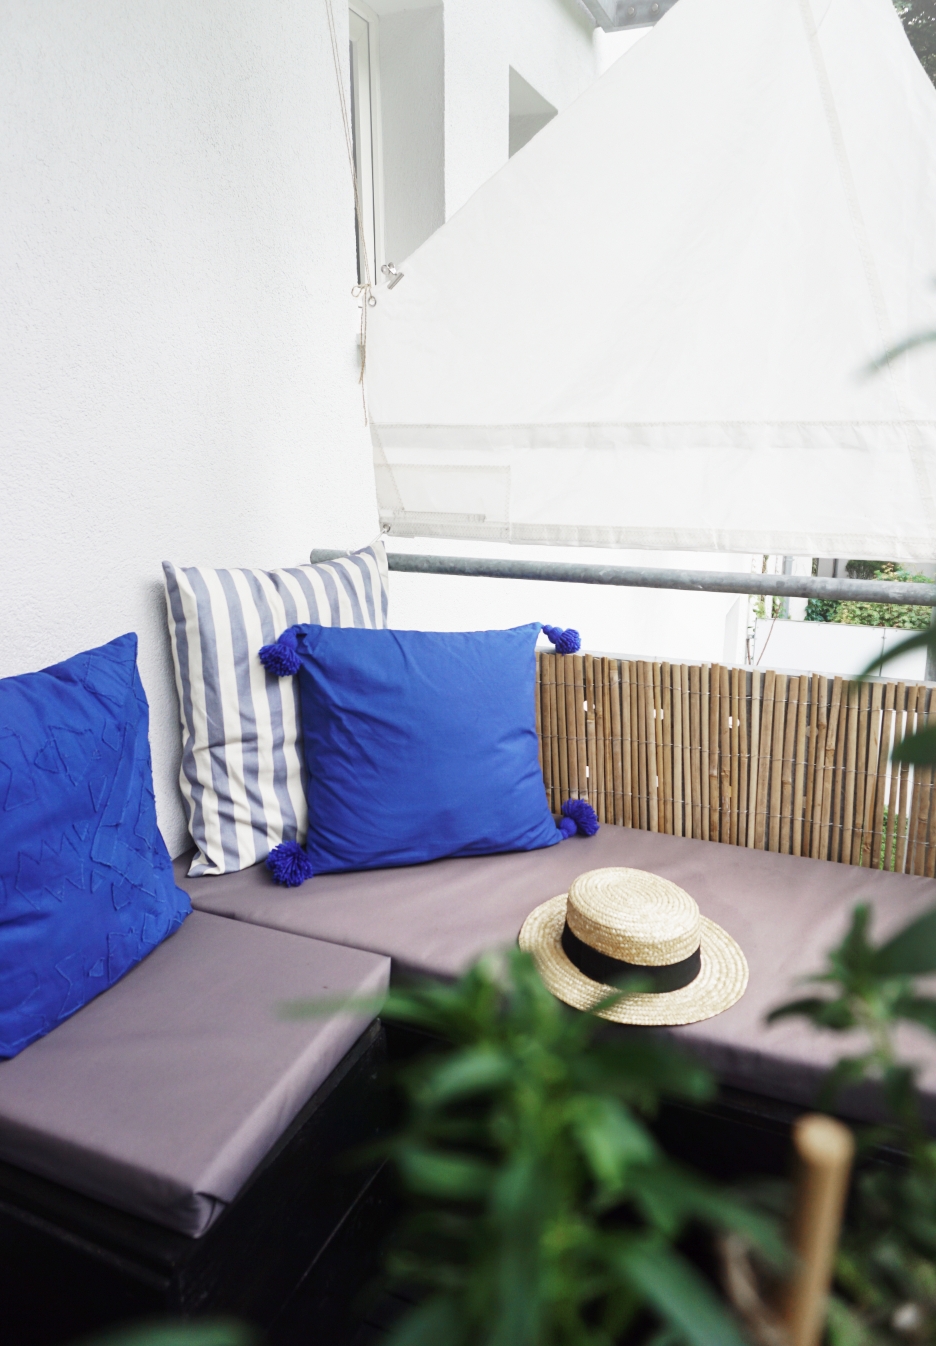 DIY-Möbel auf dem Balkon

#livingchallenge #draußensein #balkon #diy #selbermachen